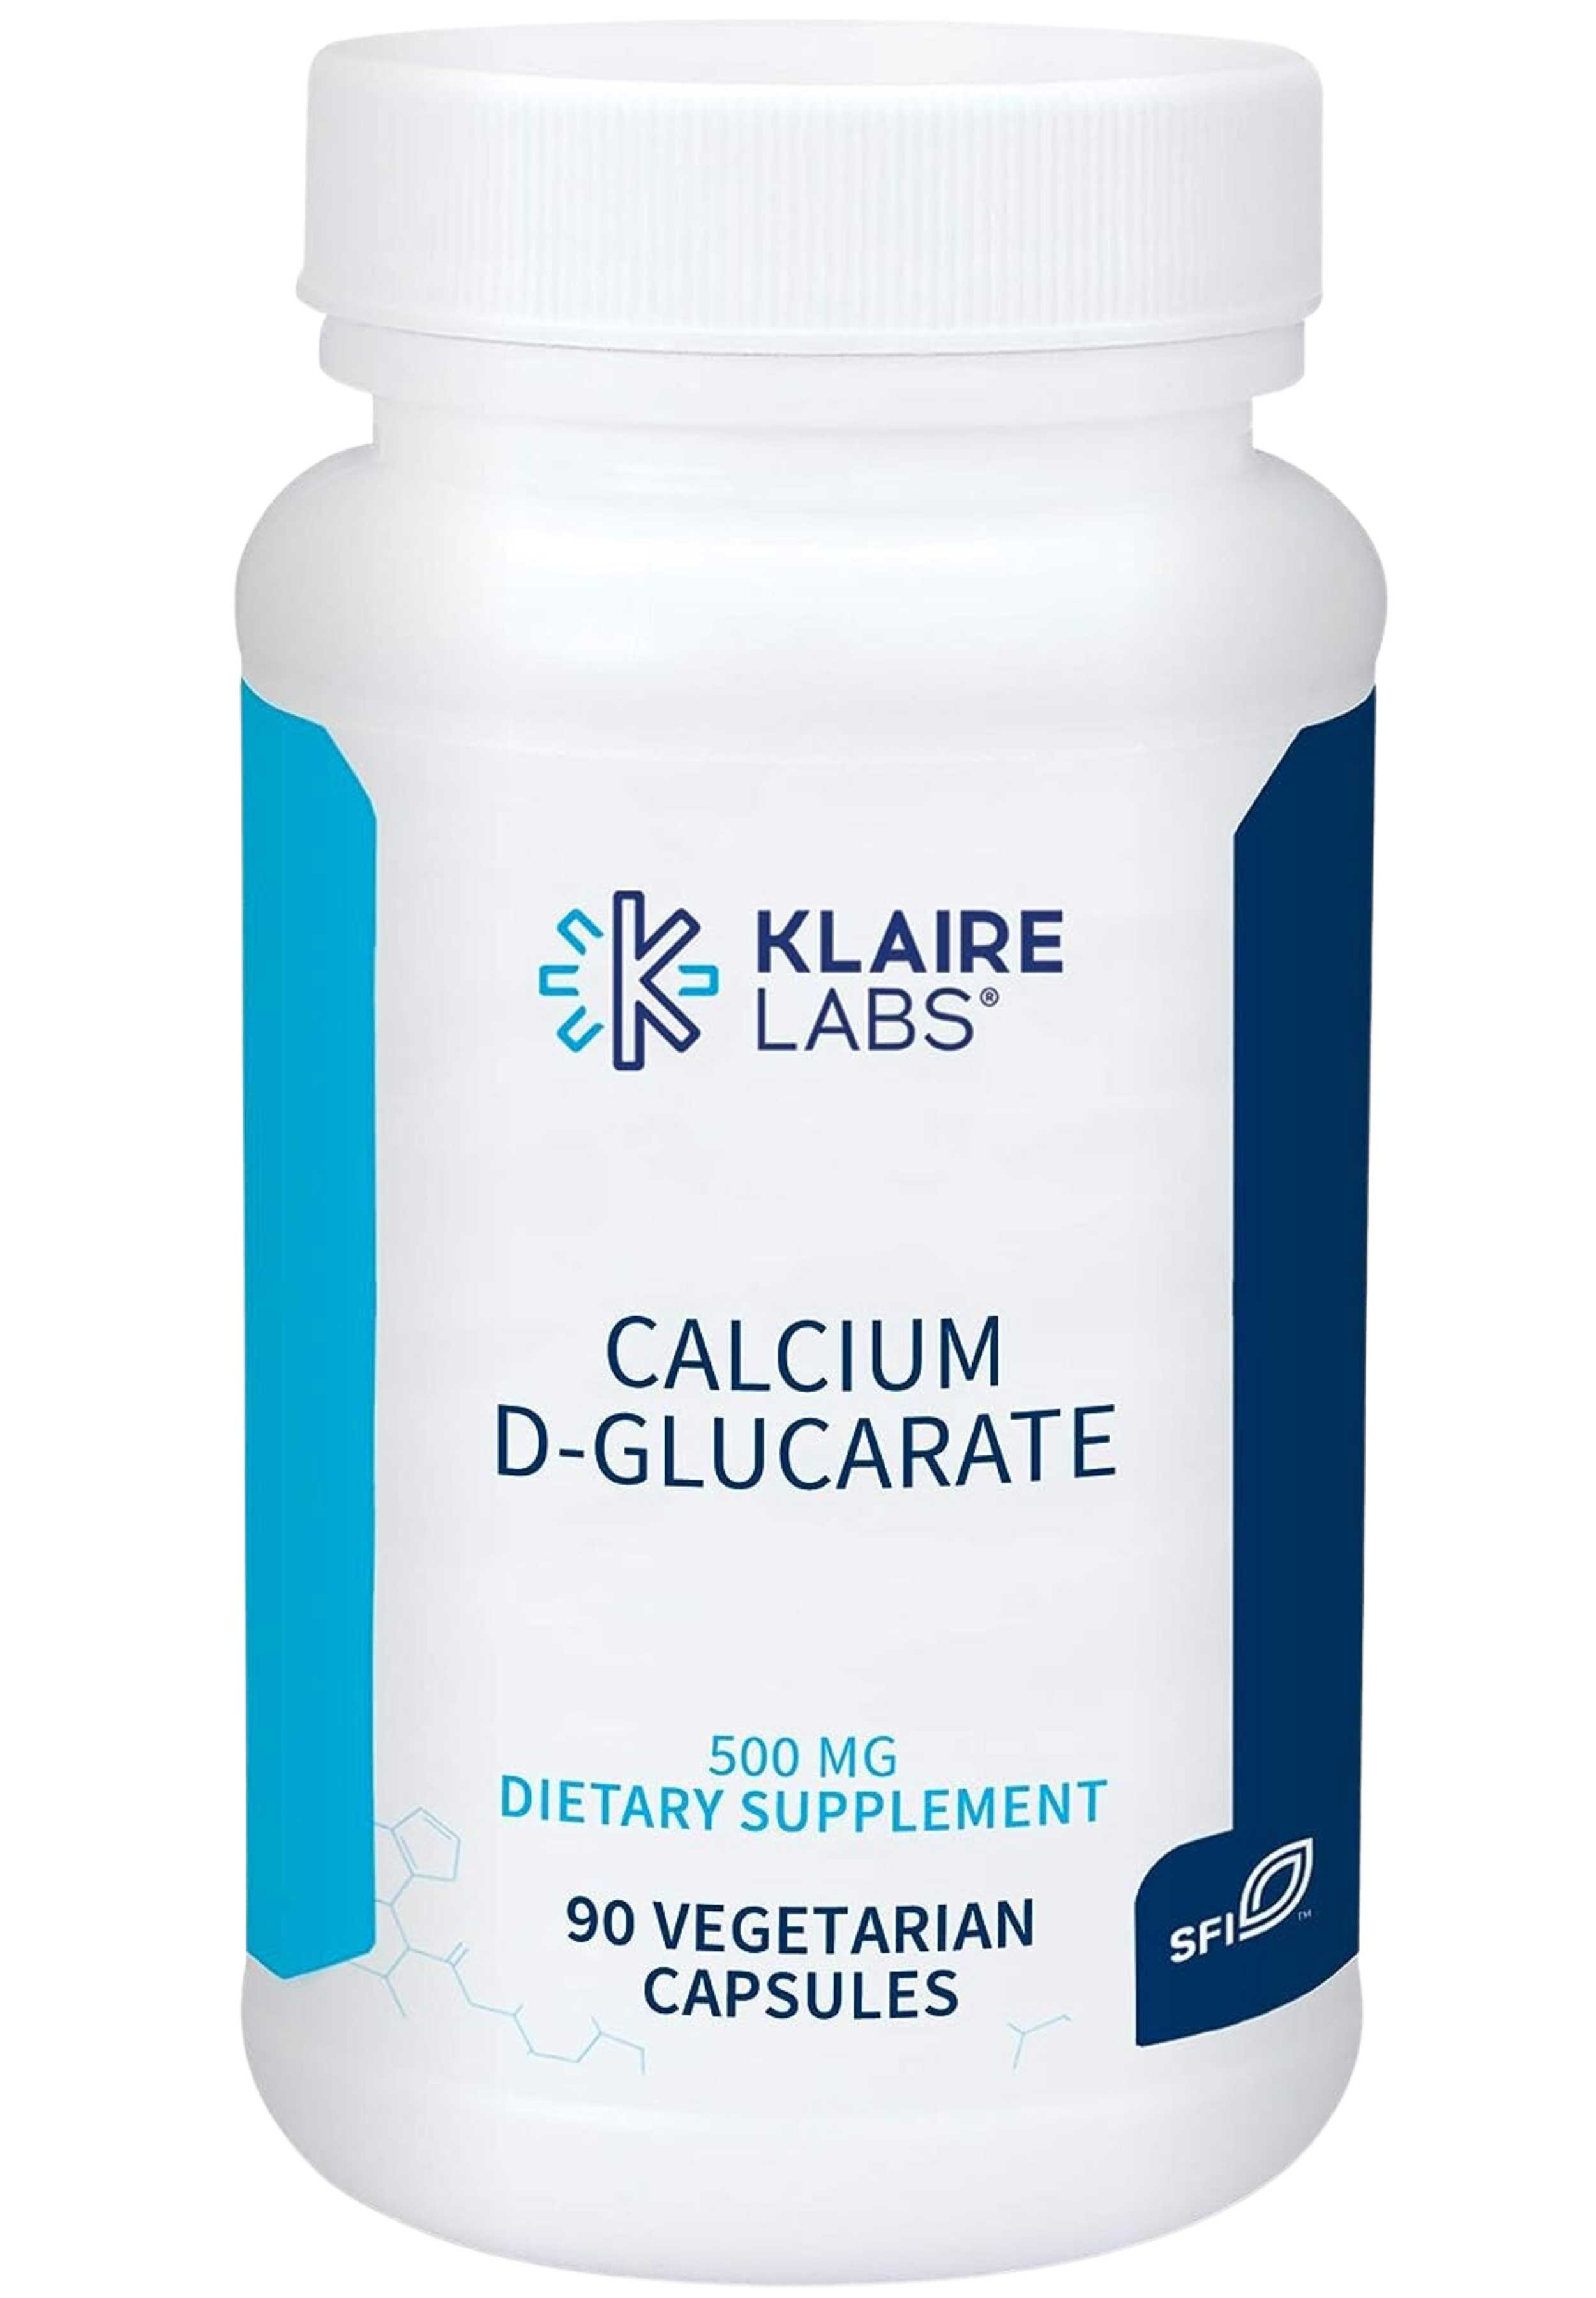 Klaire Labs Calcium D-Glucarate